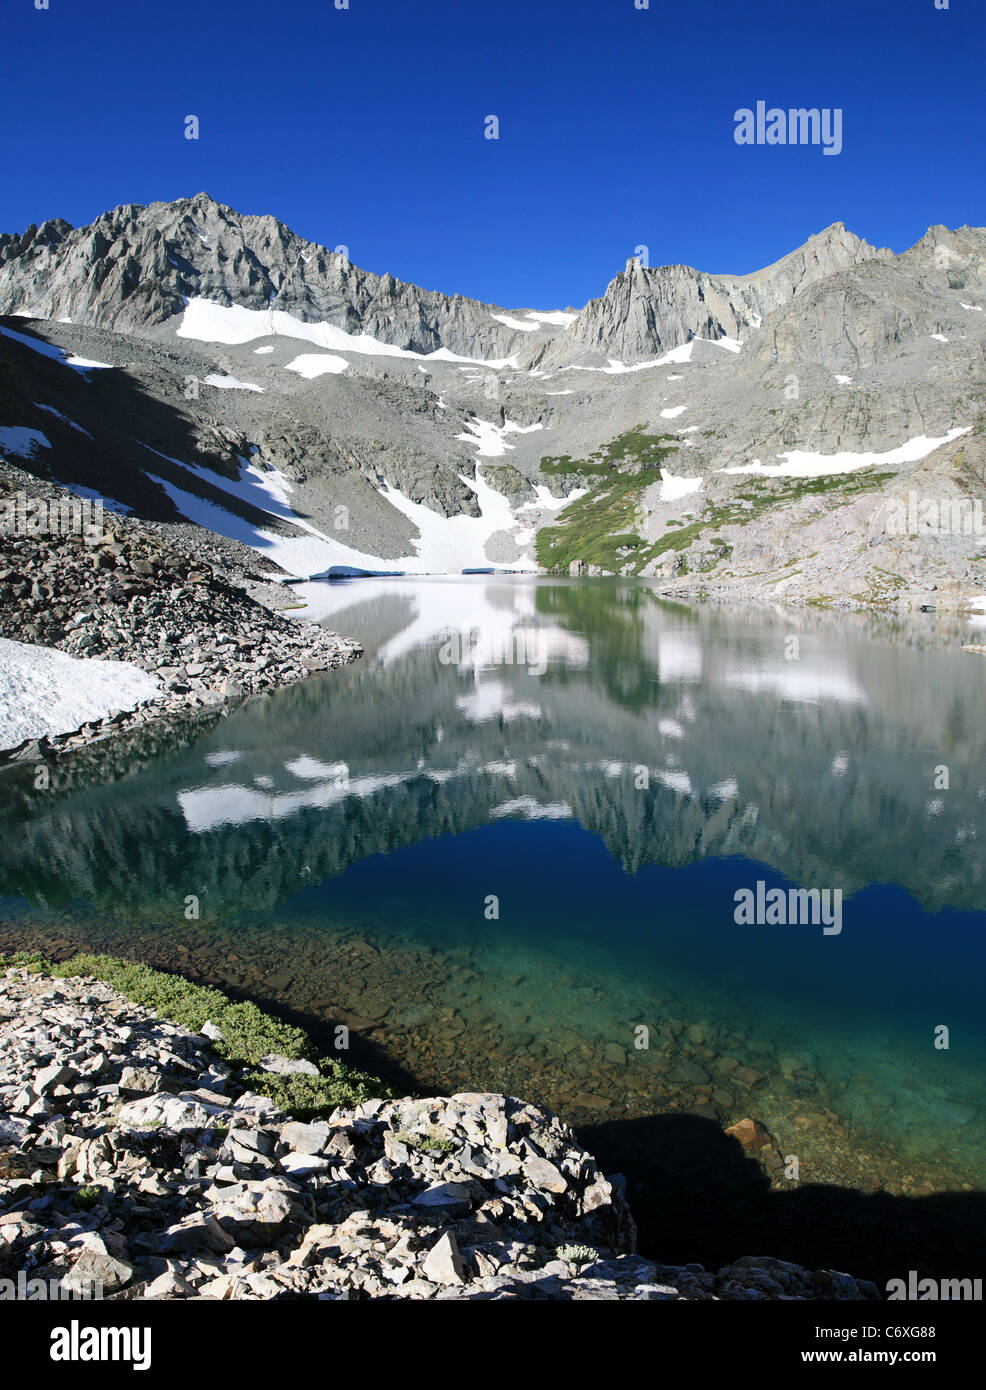 Reflet de Ed Lane et pointe le pouce dans la montagne de Birch Lake dans les montagnes de la Sierra Nevada Banque D'Images